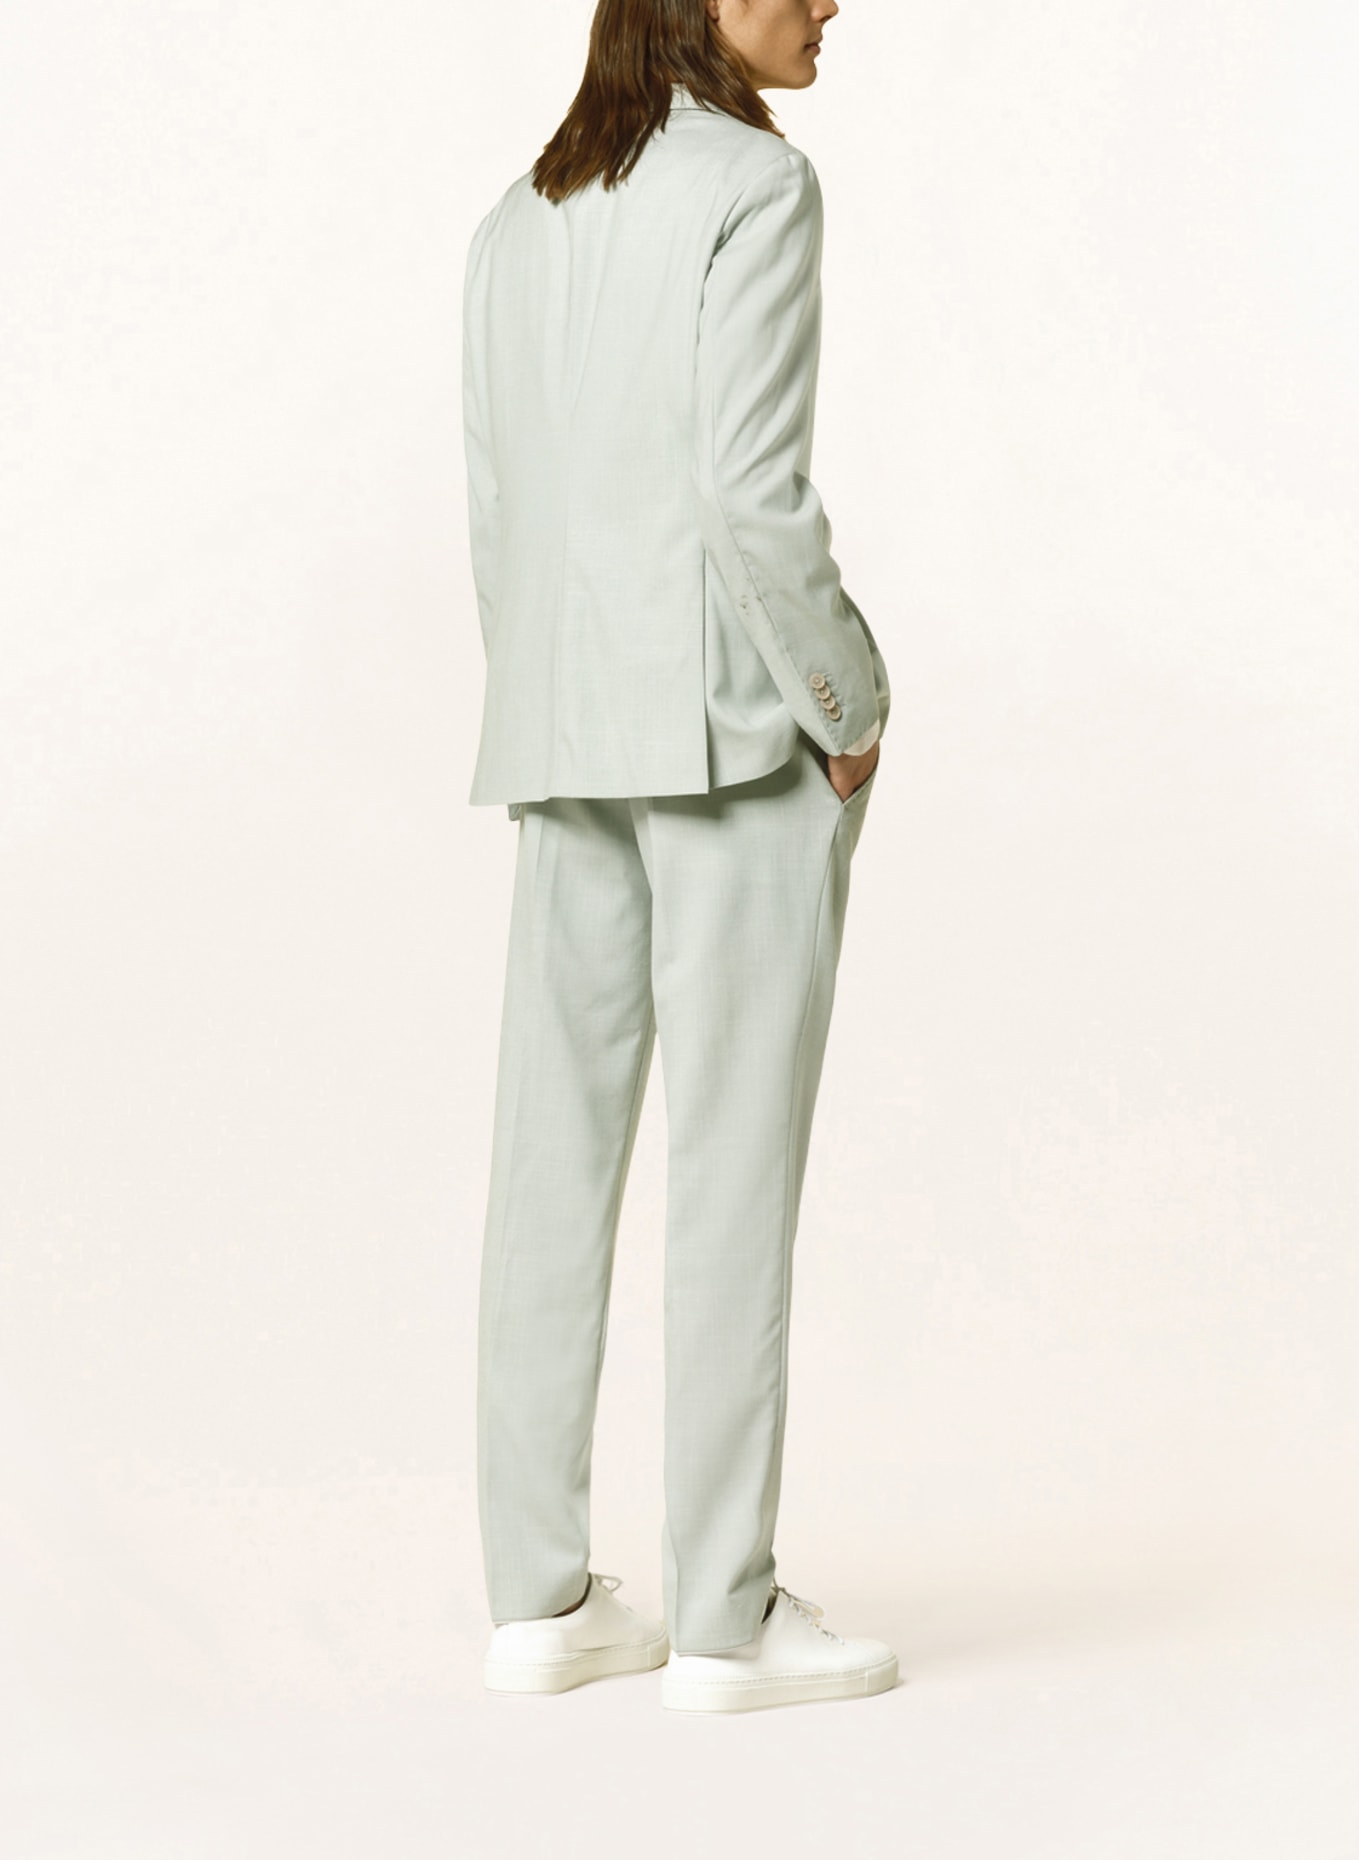 BALDESSARINI Suit jacket regular fit, Color: 5110 Green Bay (Image 3)